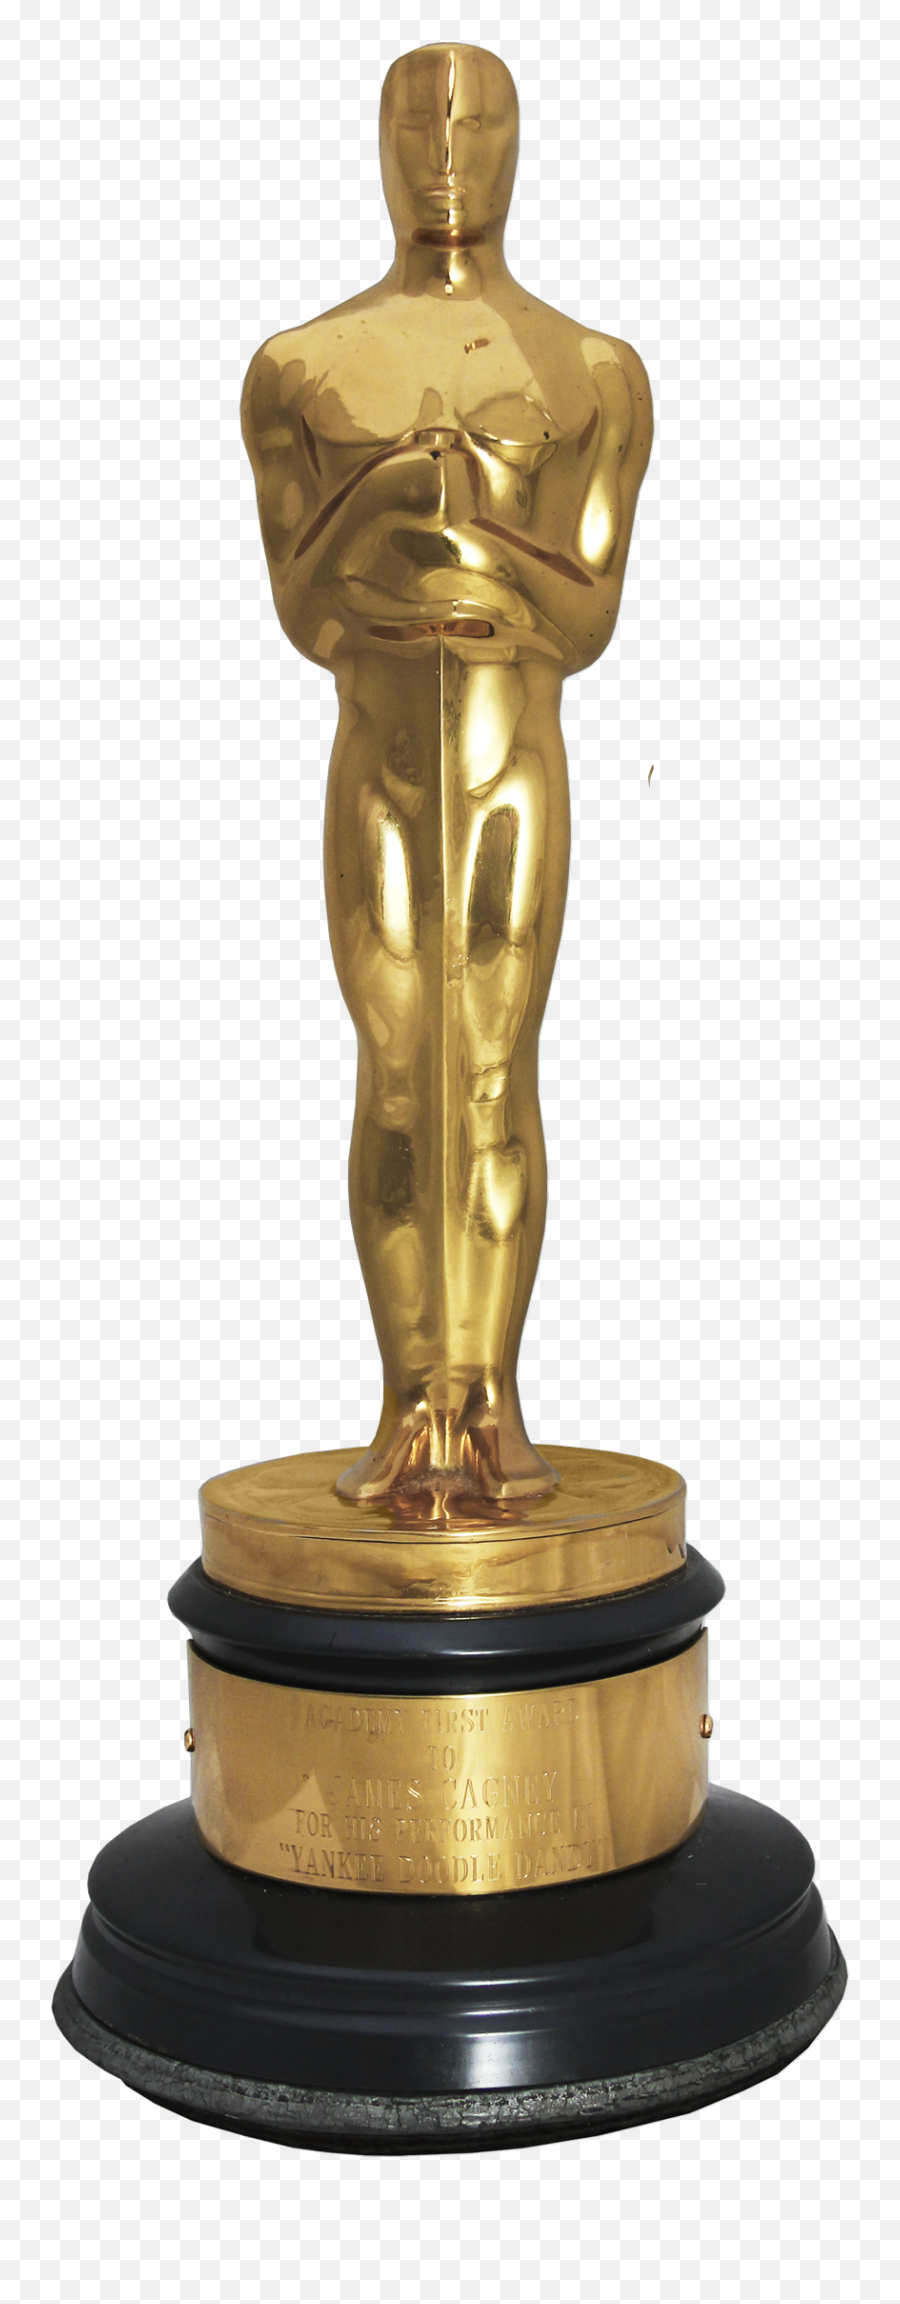 Oscar Award Png Image File - Transparent Golden Globe Award,Award Png